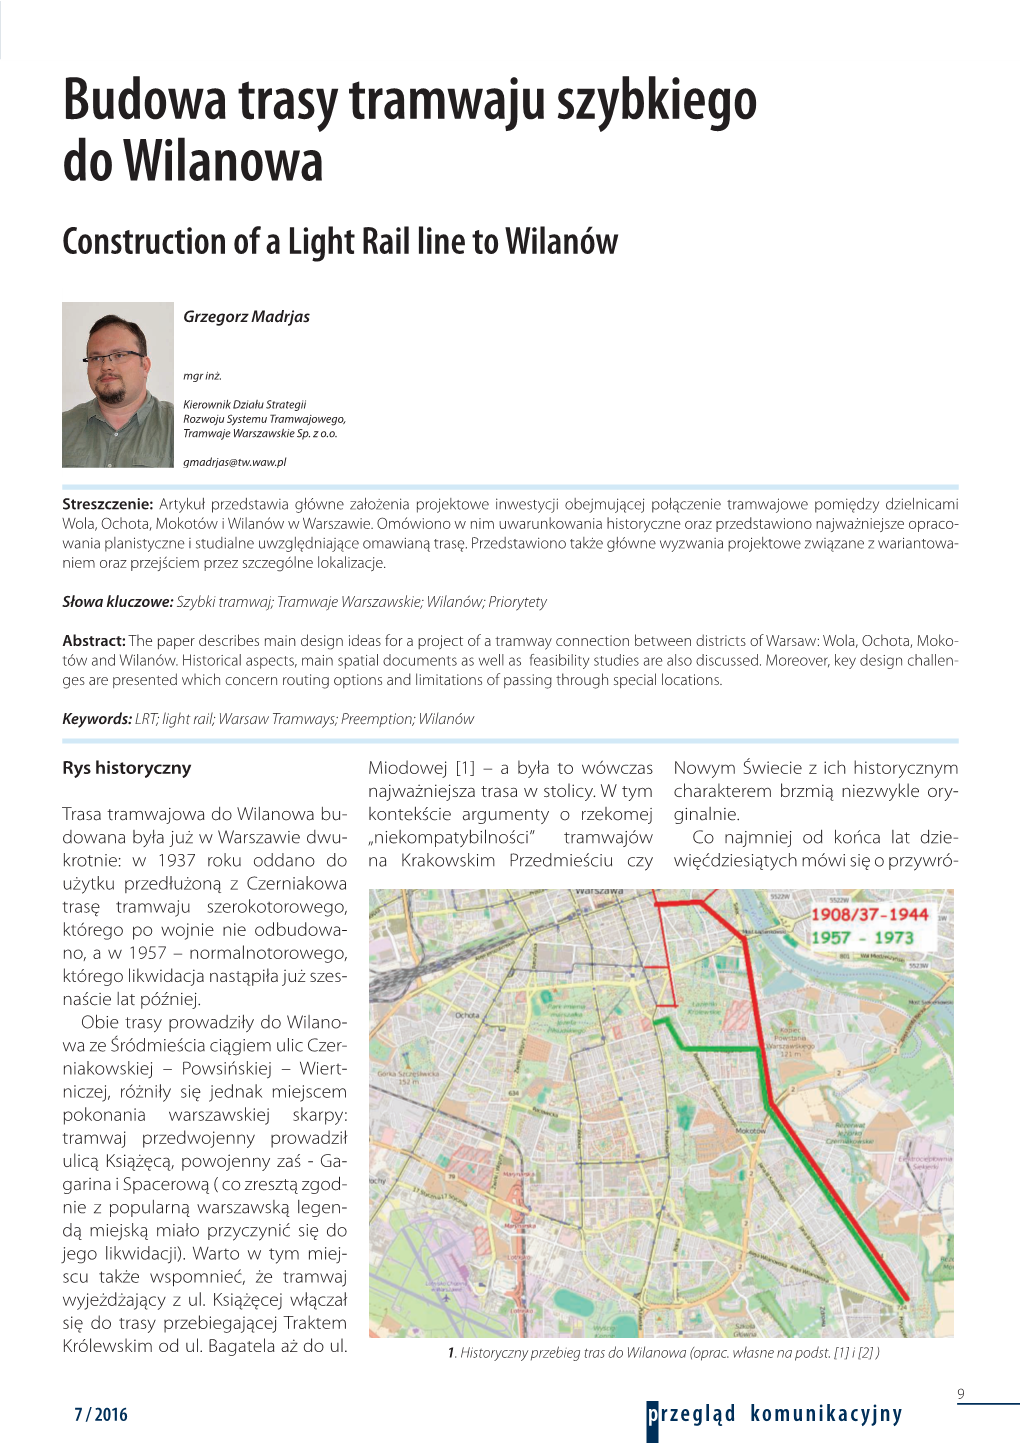 Budowa Trasy Tramwaju Szybkiego Do Wilanowa Construction of a Light Rail Line to Wilanów